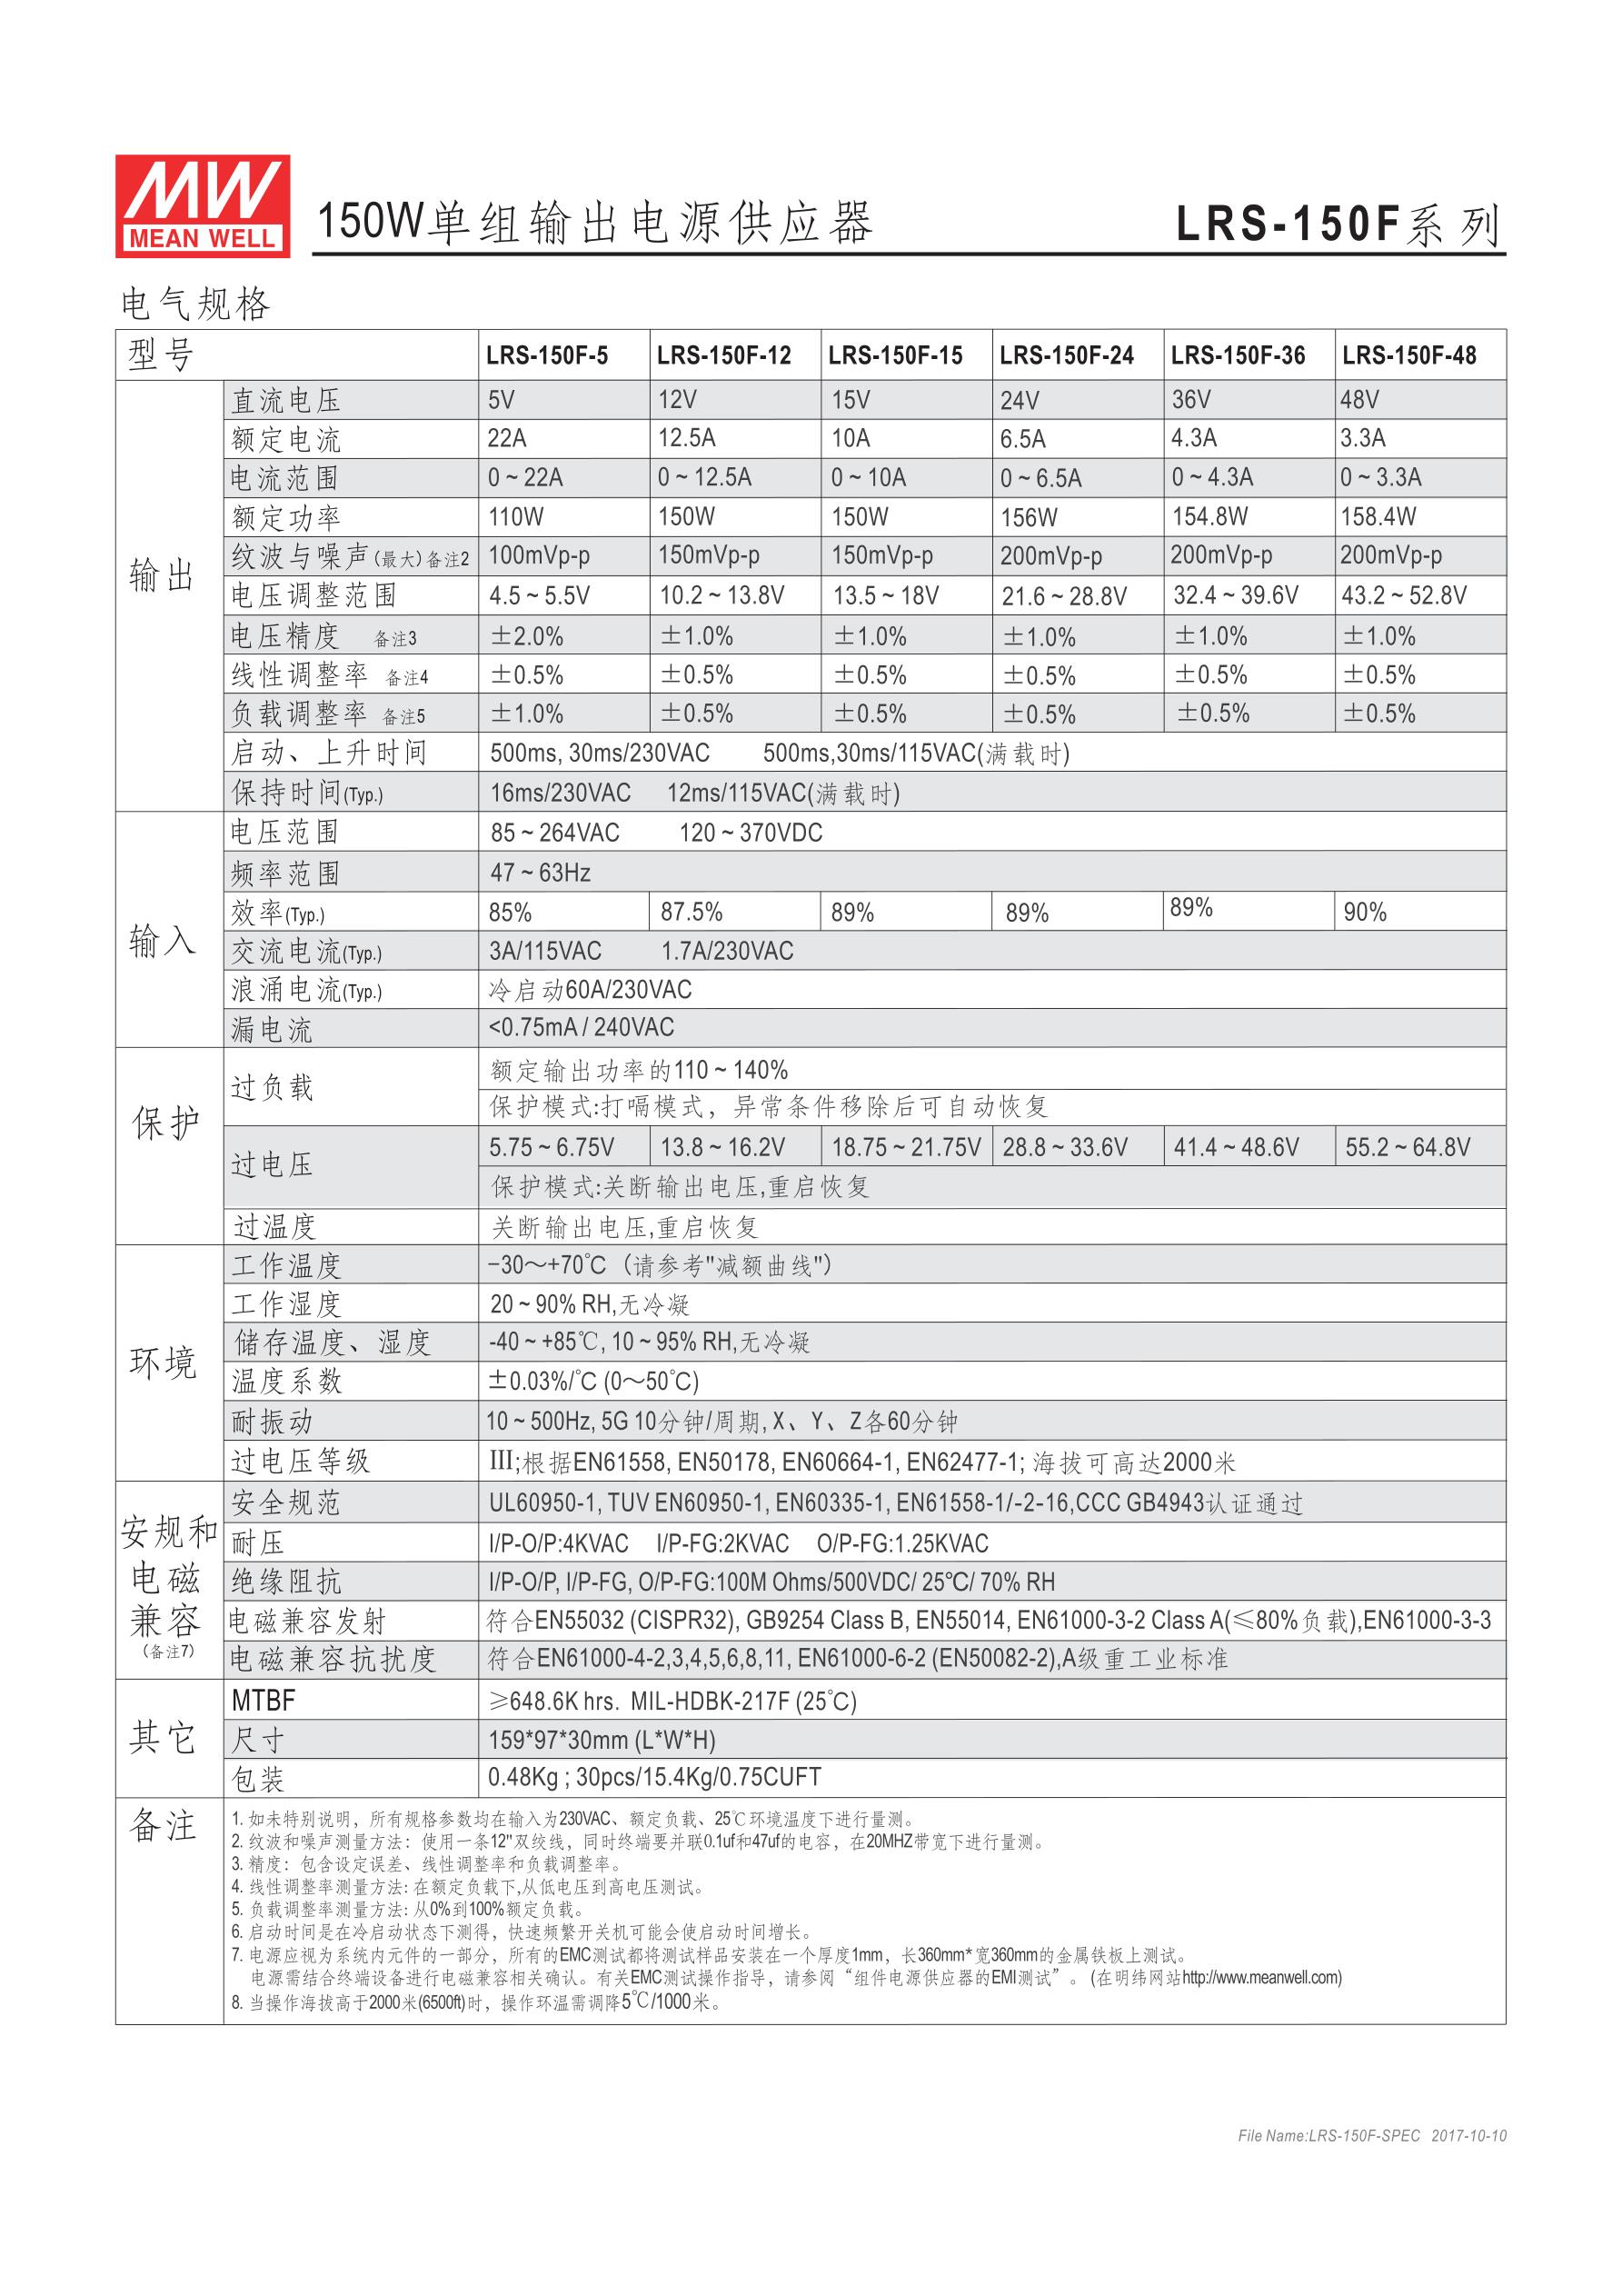 台湾明纬电源LRS-150F-36 154.8W 36V4.3A输出 (全电压输入型)明纬超薄高性能开关电源 明纬开关电源,明纬电源,台湾明纬官网,MEAN WELL,LRS-150F-36